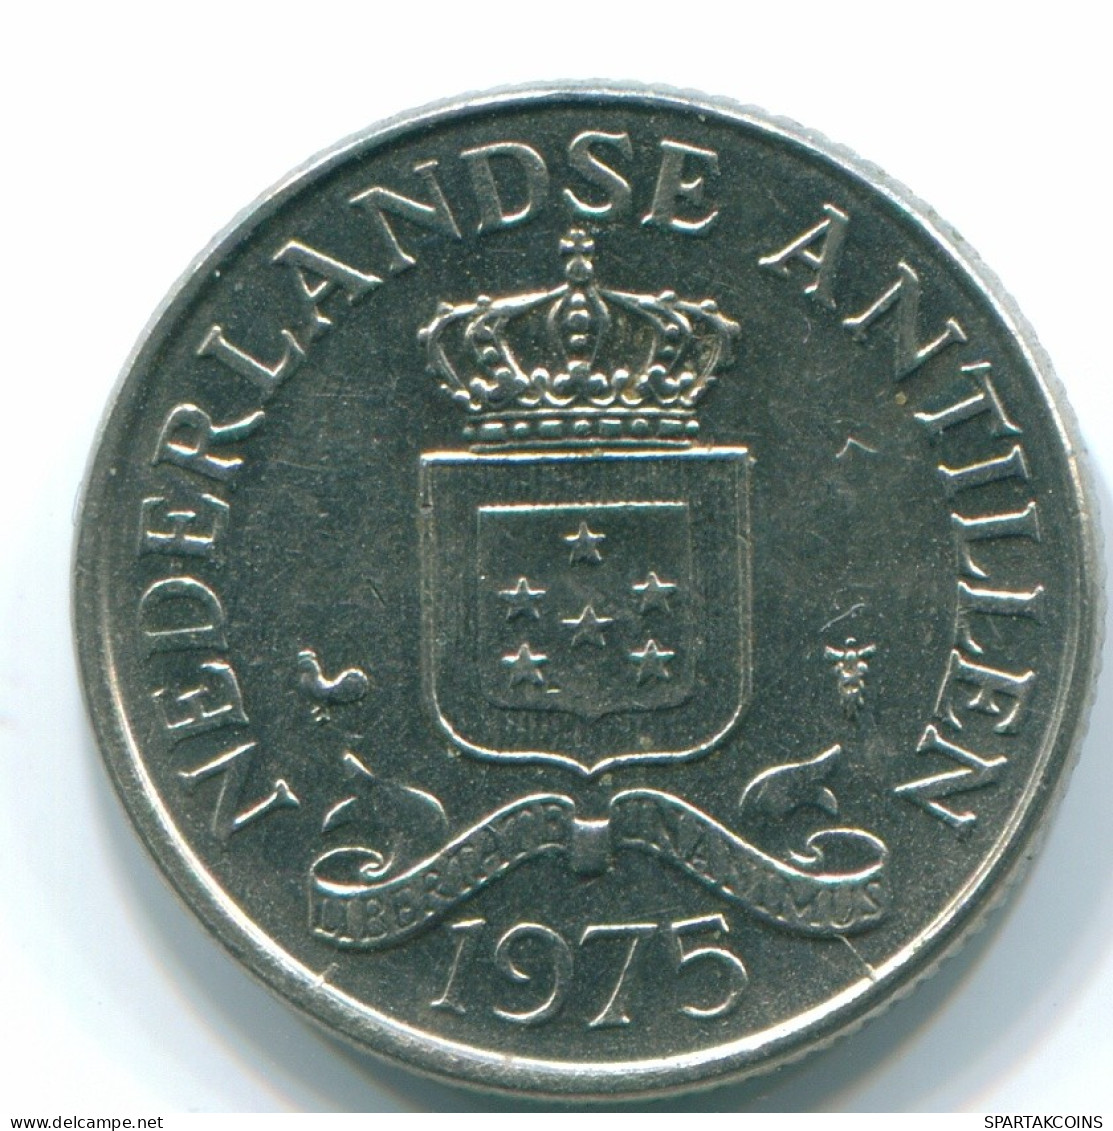 25 CENTS 1975 NIEDERLÄNDISCHE ANTILLEN Nickel Koloniale Münze #S11602.D.A - Antilles Néerlandaises